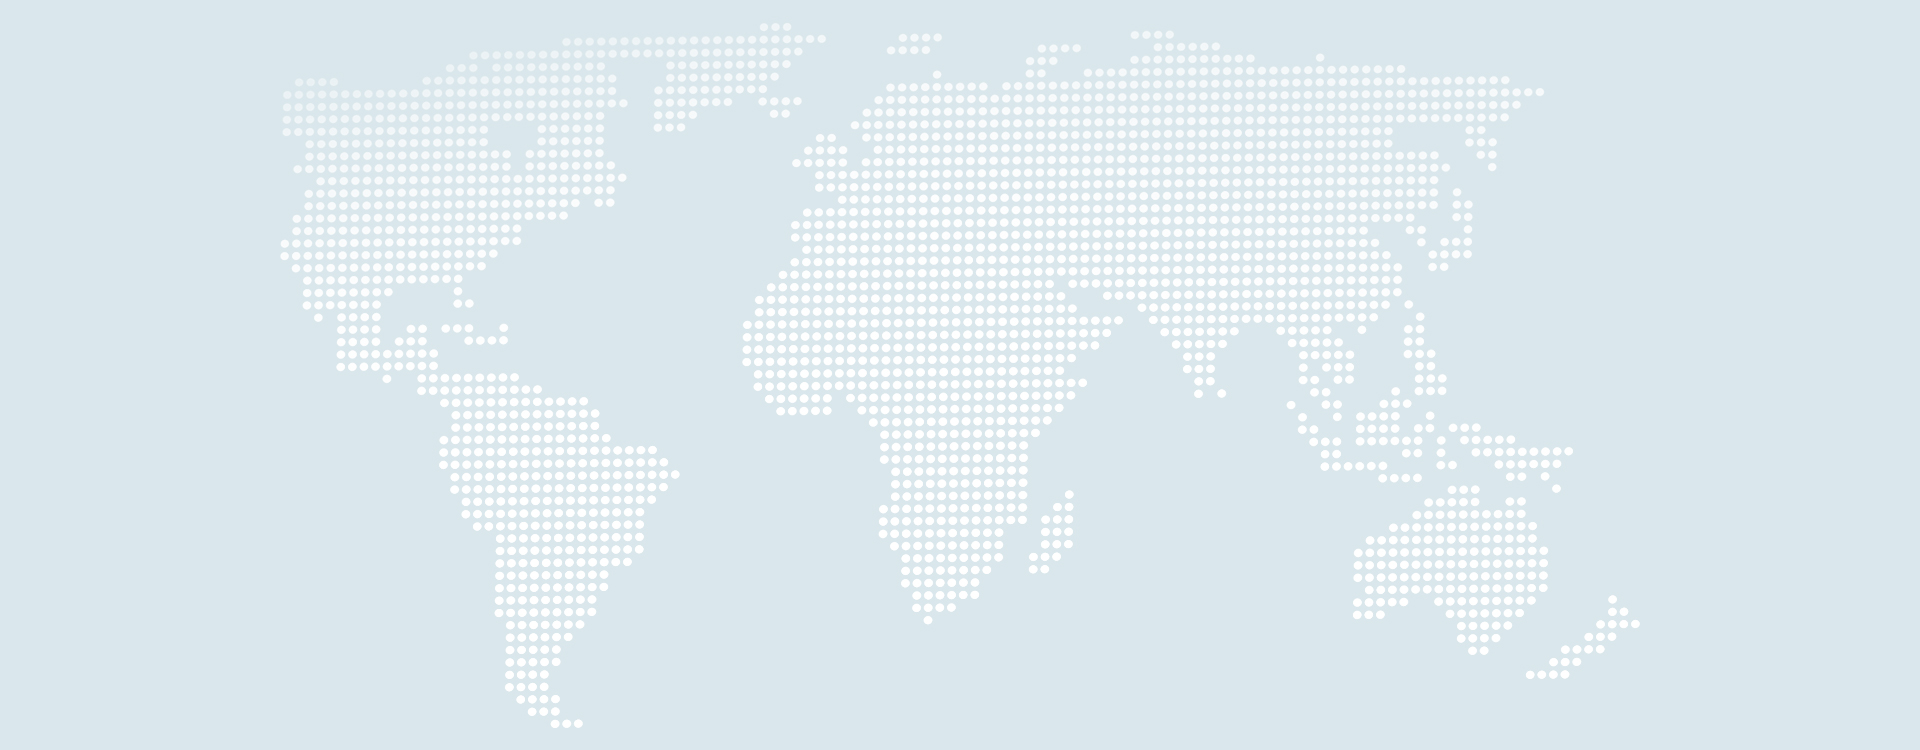 世界地图world-map-306338.jpg